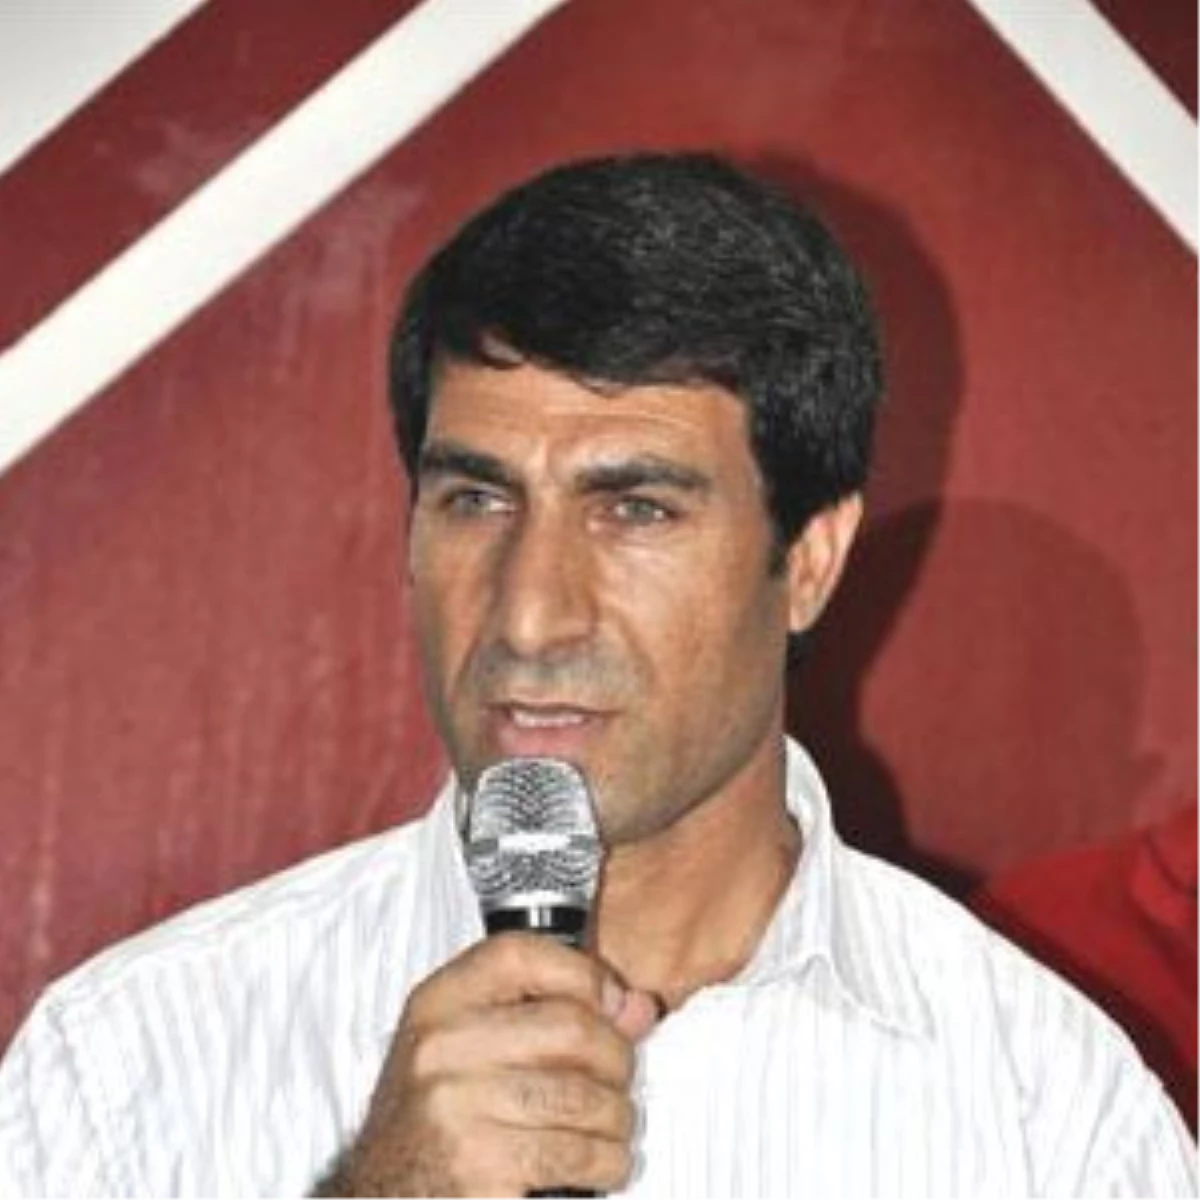 BDP Elazığ İl Başkanı da Gözaltına Alındı